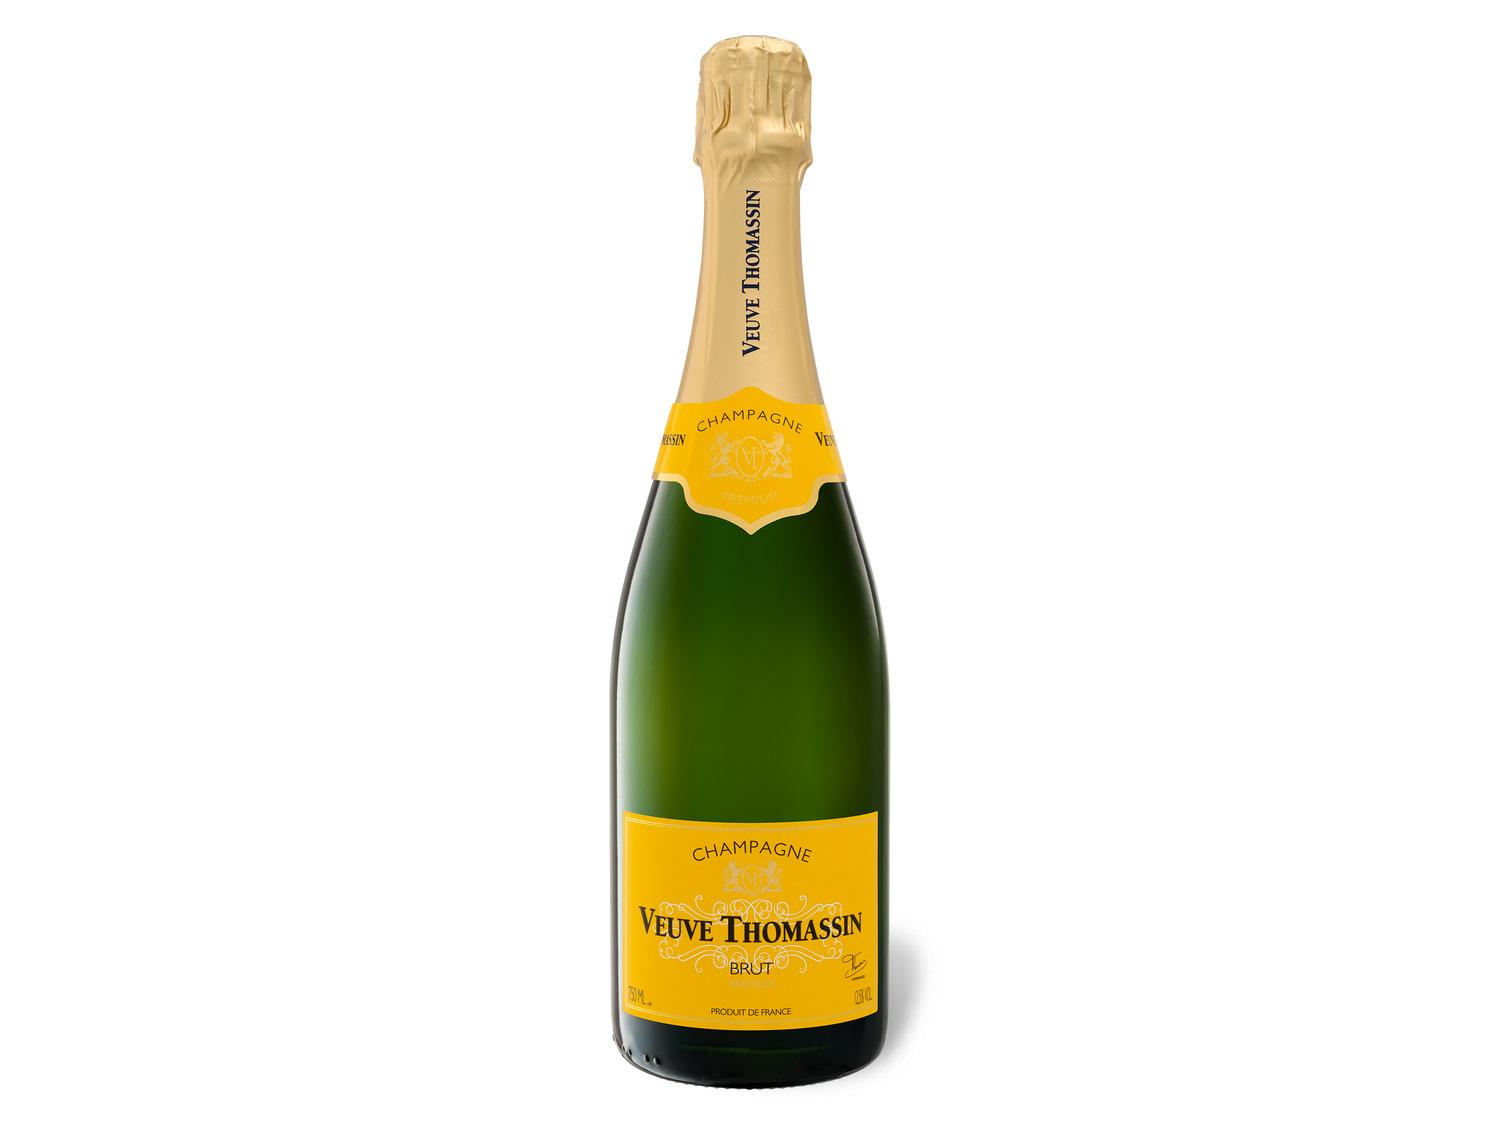 Veuve Thomassin online | kaufen brut, LIDL Champagner